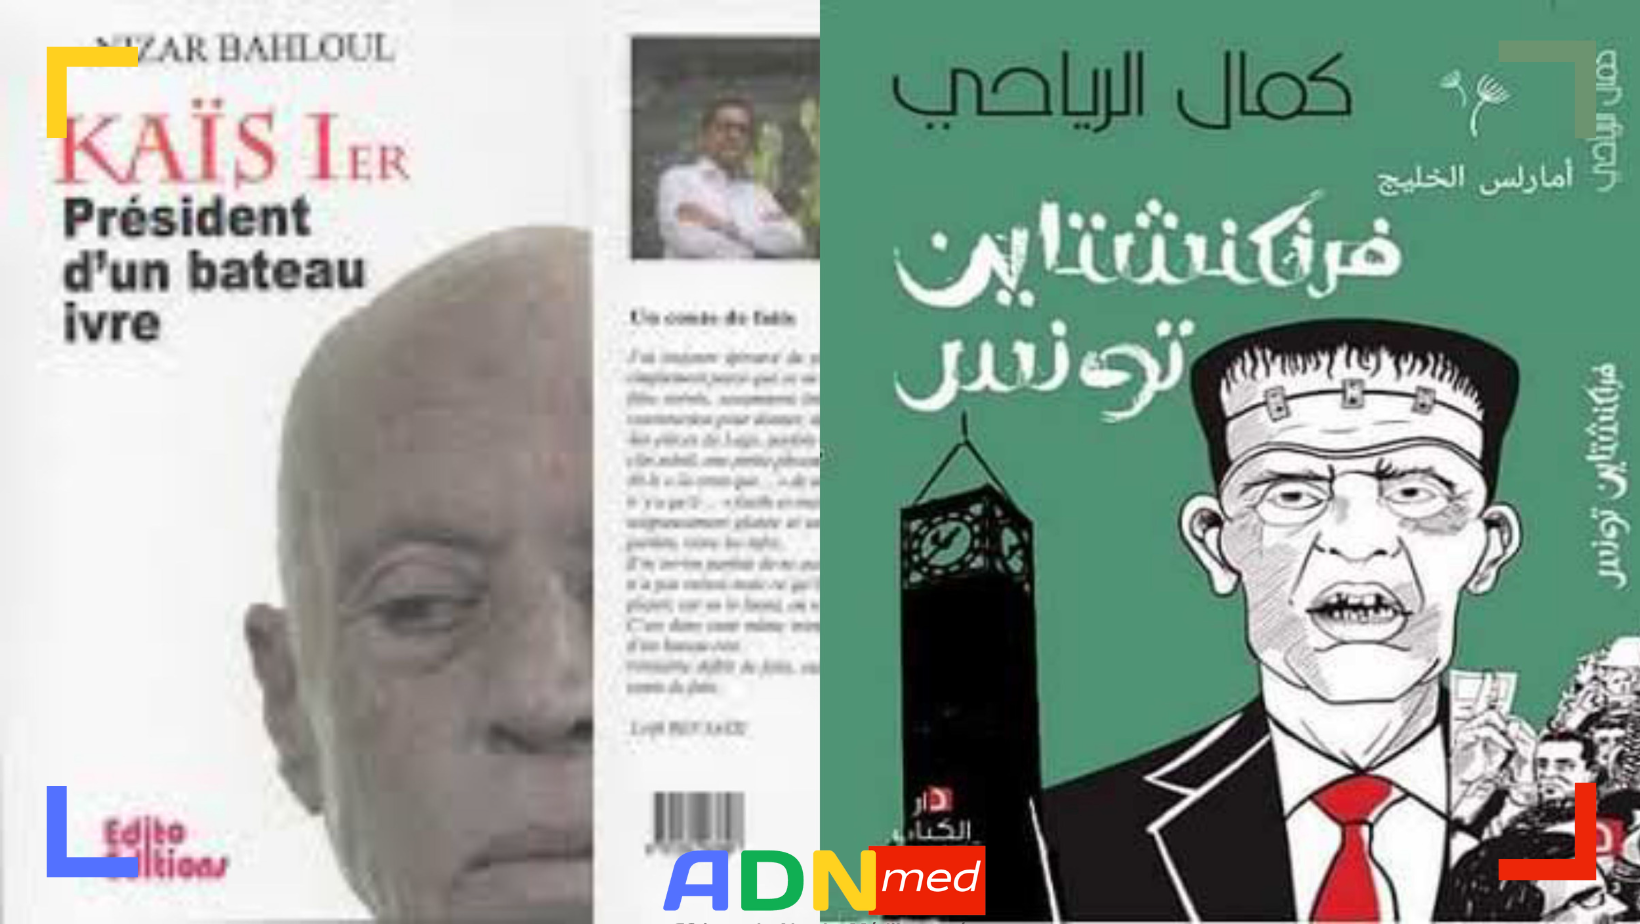 En Tunisie, des livres censurés au Salon du livre rappellent les méthodes de Ben Ali